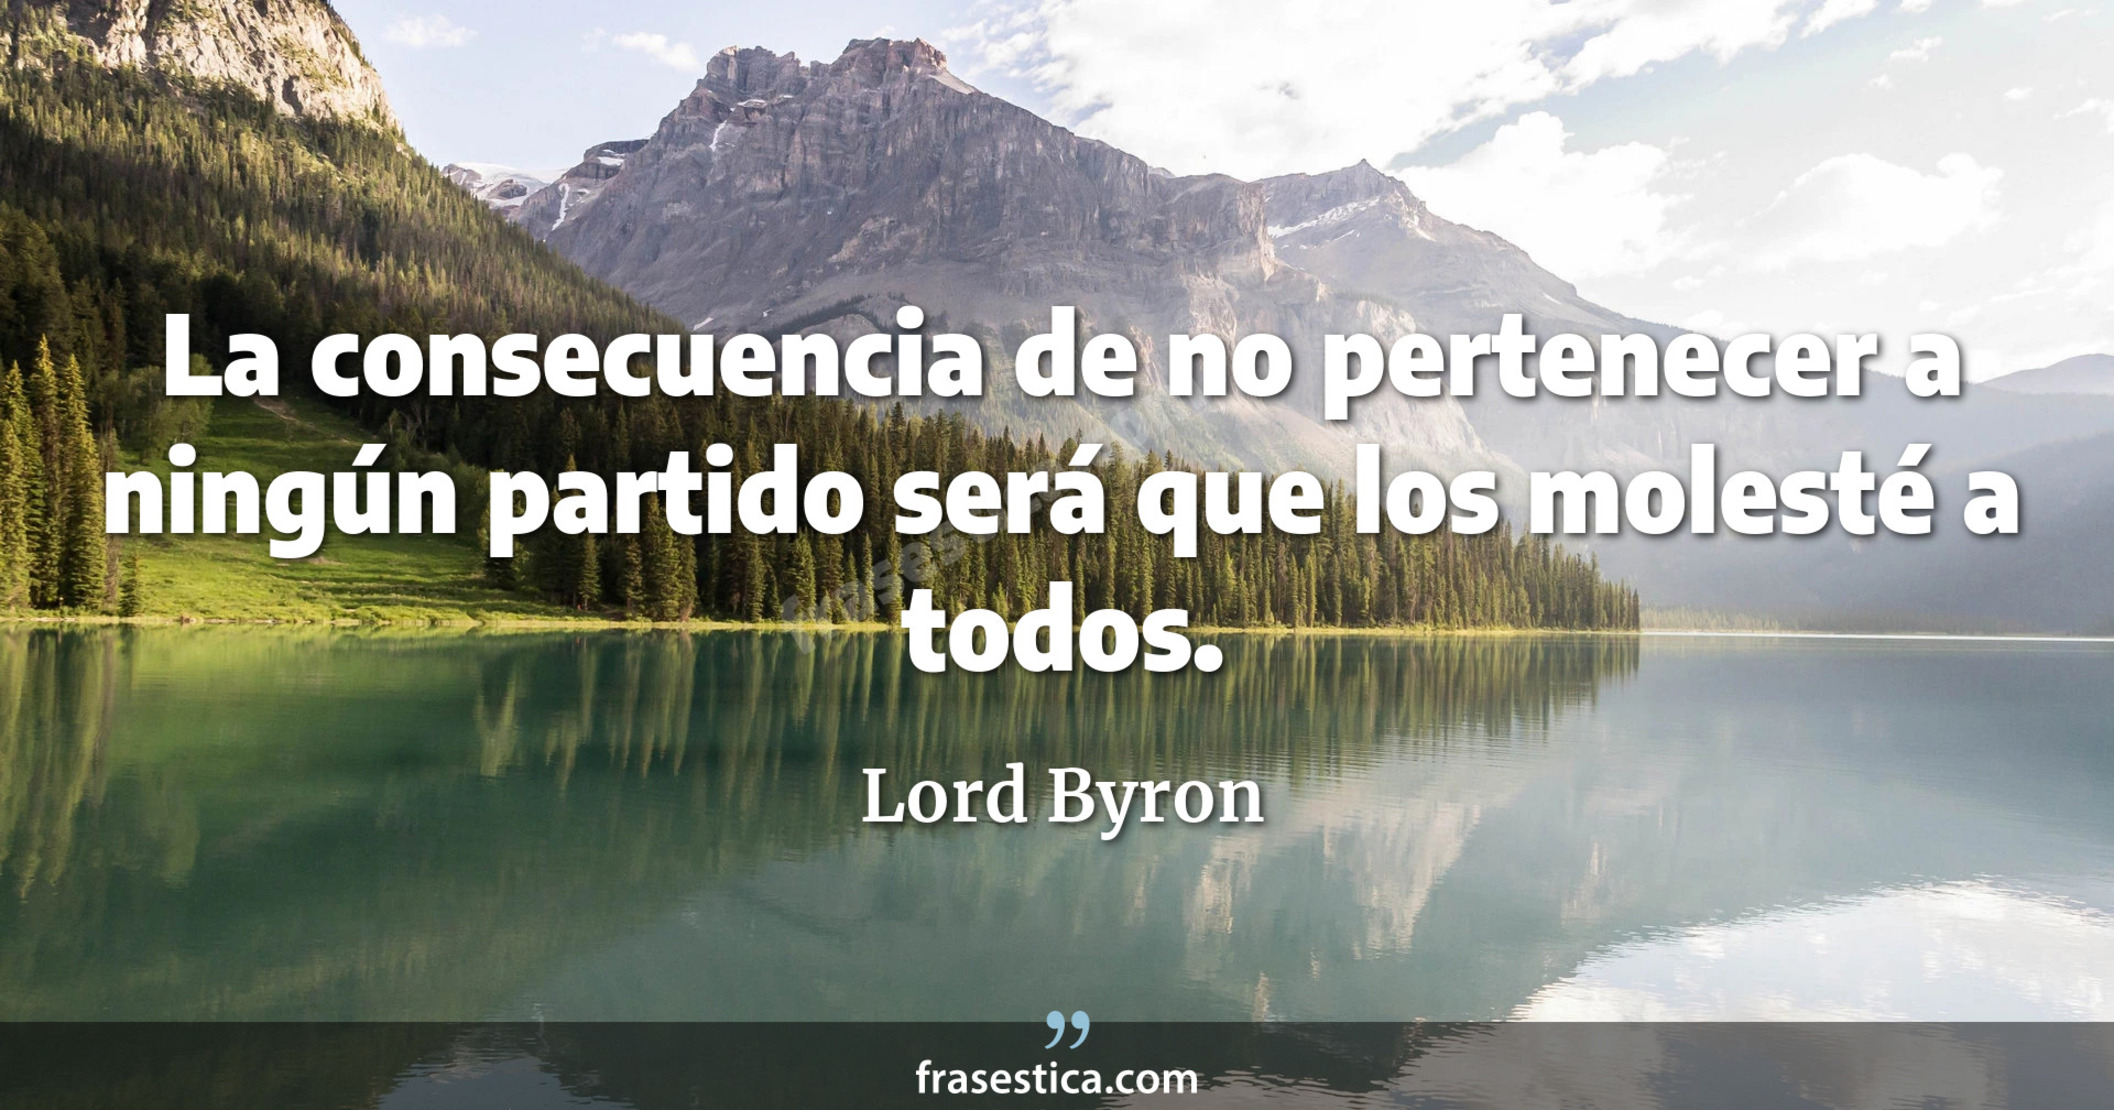 La consecuencia de no pertenecer a ningún partido será que los molesté a todos. - Lord Byron